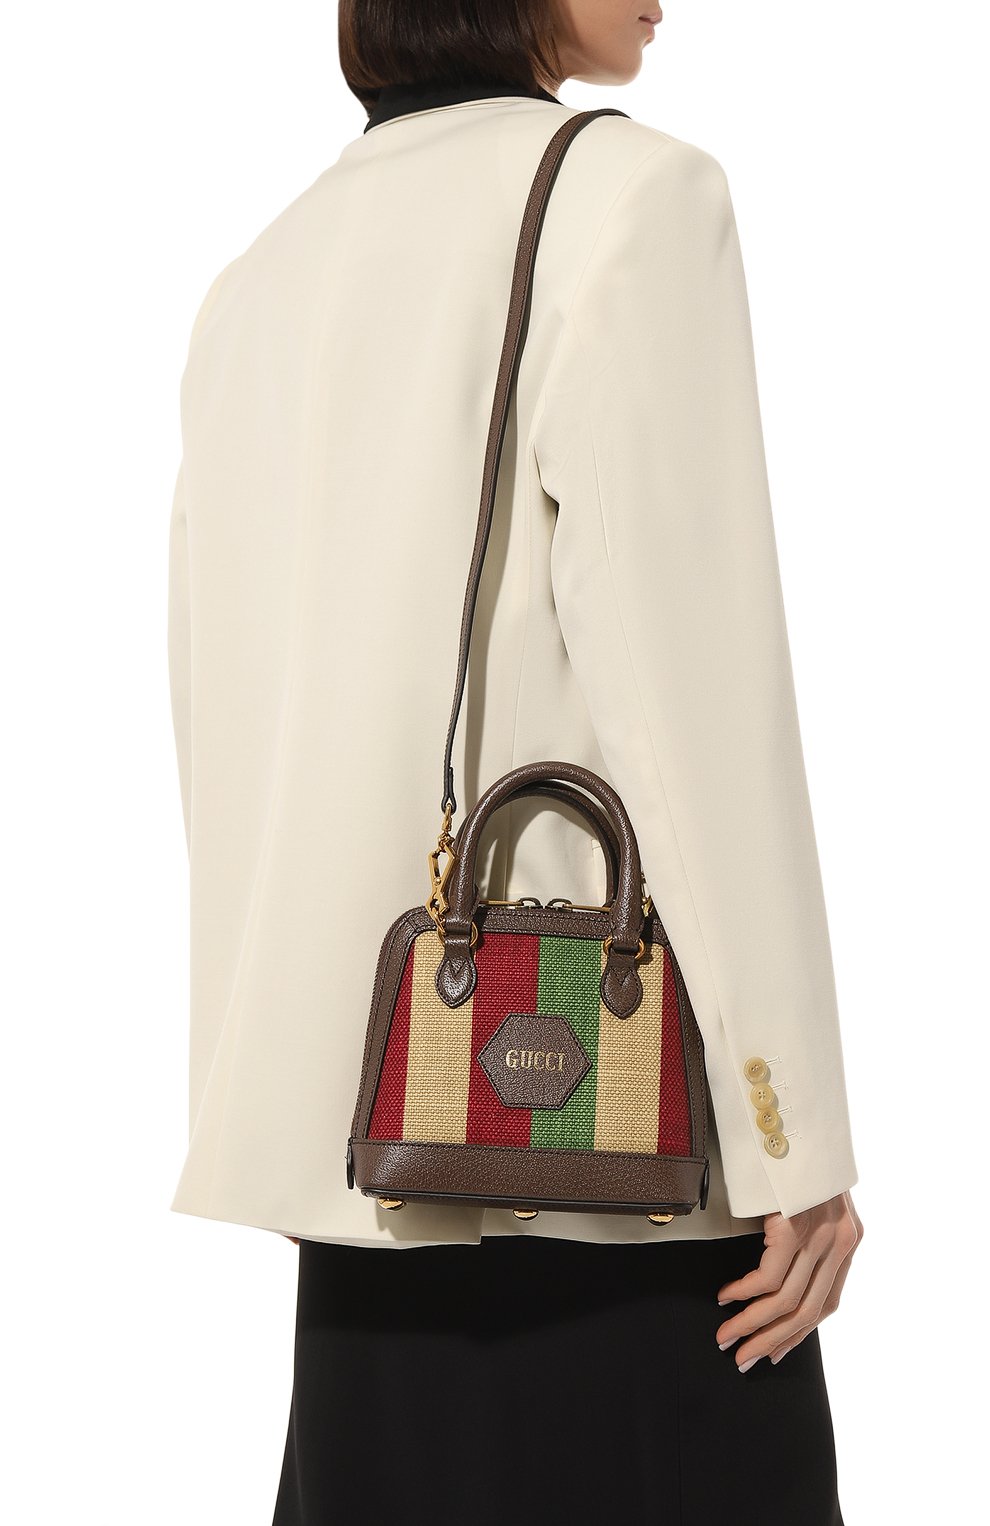 Женская сумка gucci 100 mini GUCCI разноцветного цвета, арт. 676532 ULB6T | Фото 2 (Сумки-технические: Сумки top-handle; Размер: mini; Ремень/цепочка: На ремешке; Материал: Текстиль)